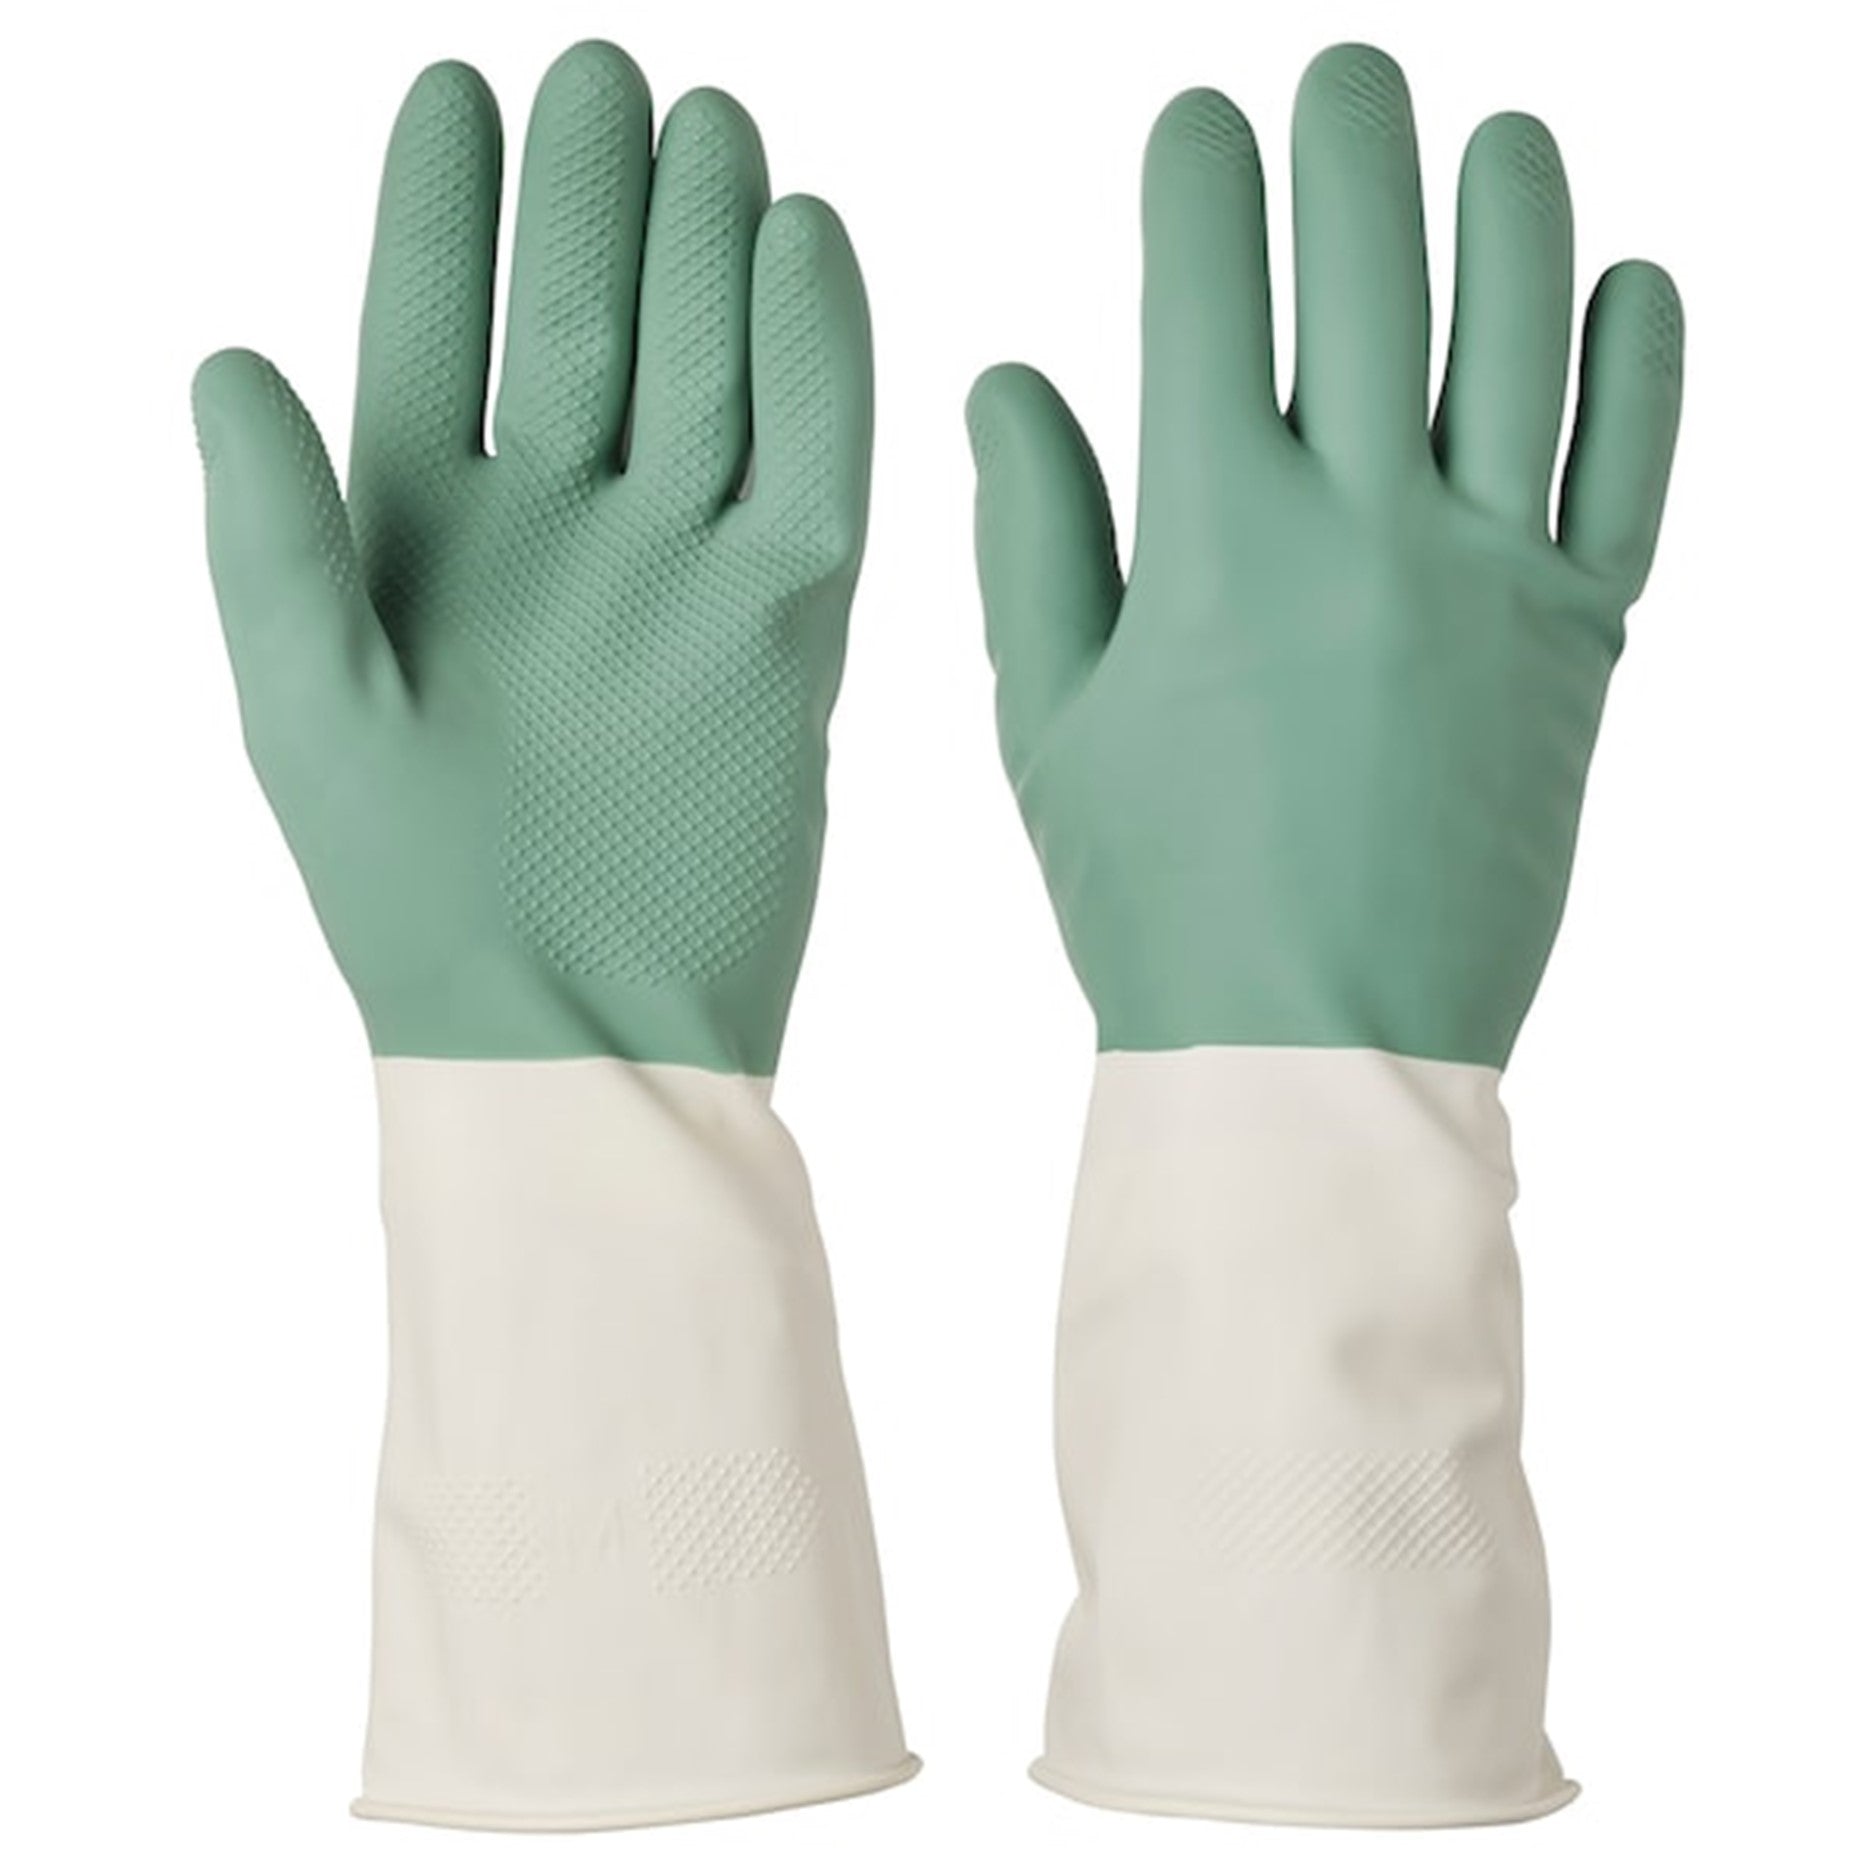 Ikea Rinnig Gloves, 1 Pair